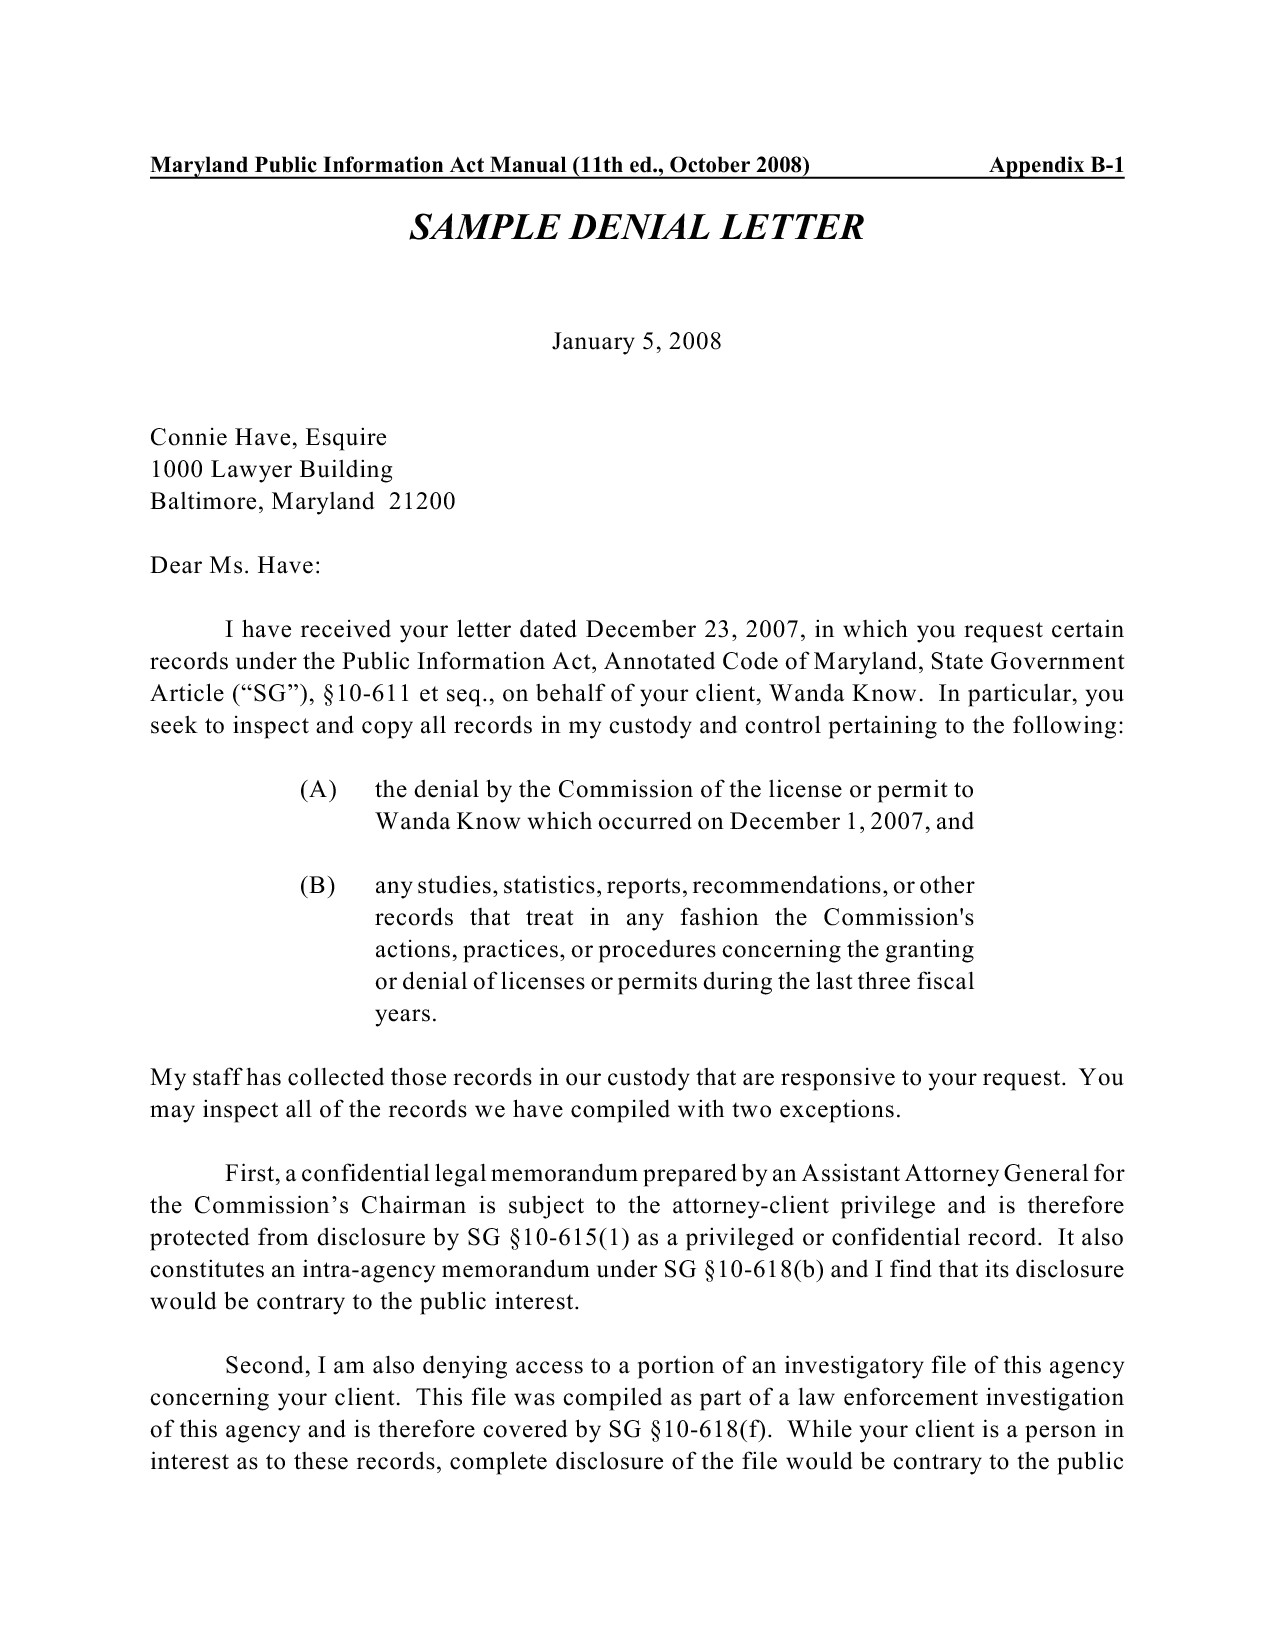 post sample letter denying a claim 74206